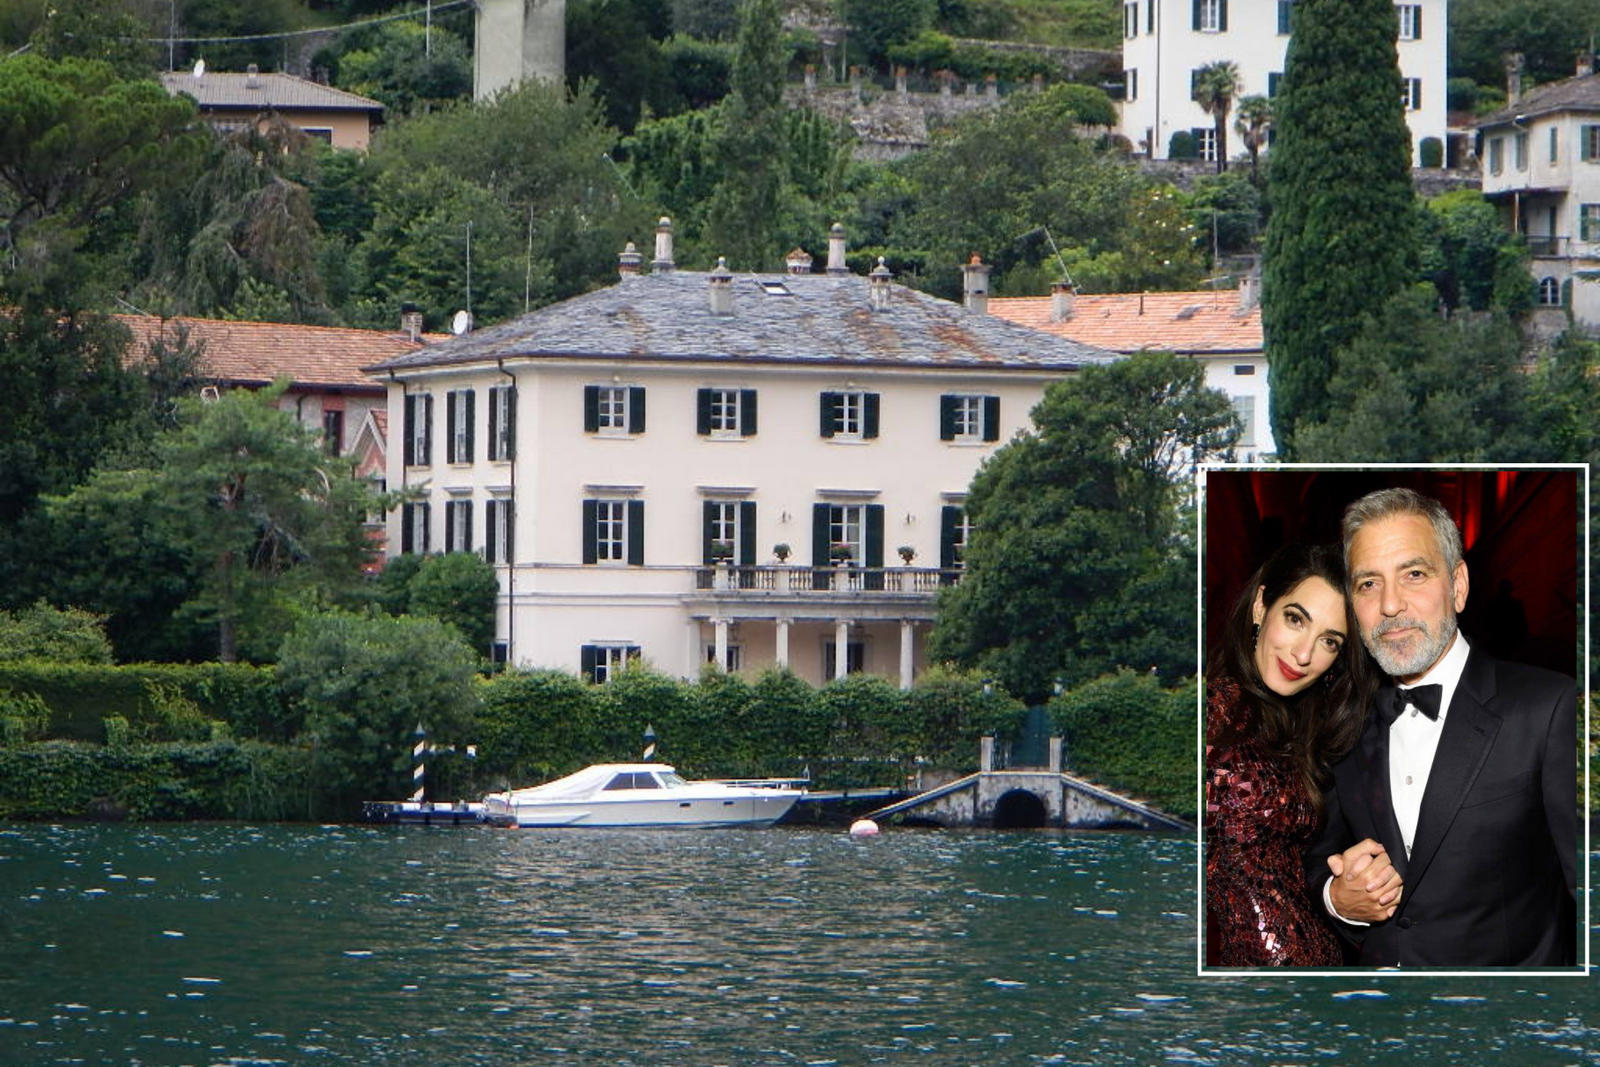 Nu Tom Cruise sau Beyoncé, ci George Clooney și soția sa Amal, care dețin cea mai scumpă casă de celebritate – aruncați o privire la uimitoarea vilă de 100 de milioane de dolari din Lacul Como, care a fost atât de populară încât oamenii au fost amendați cu 600 de dolari chiar și în apropierea ei.